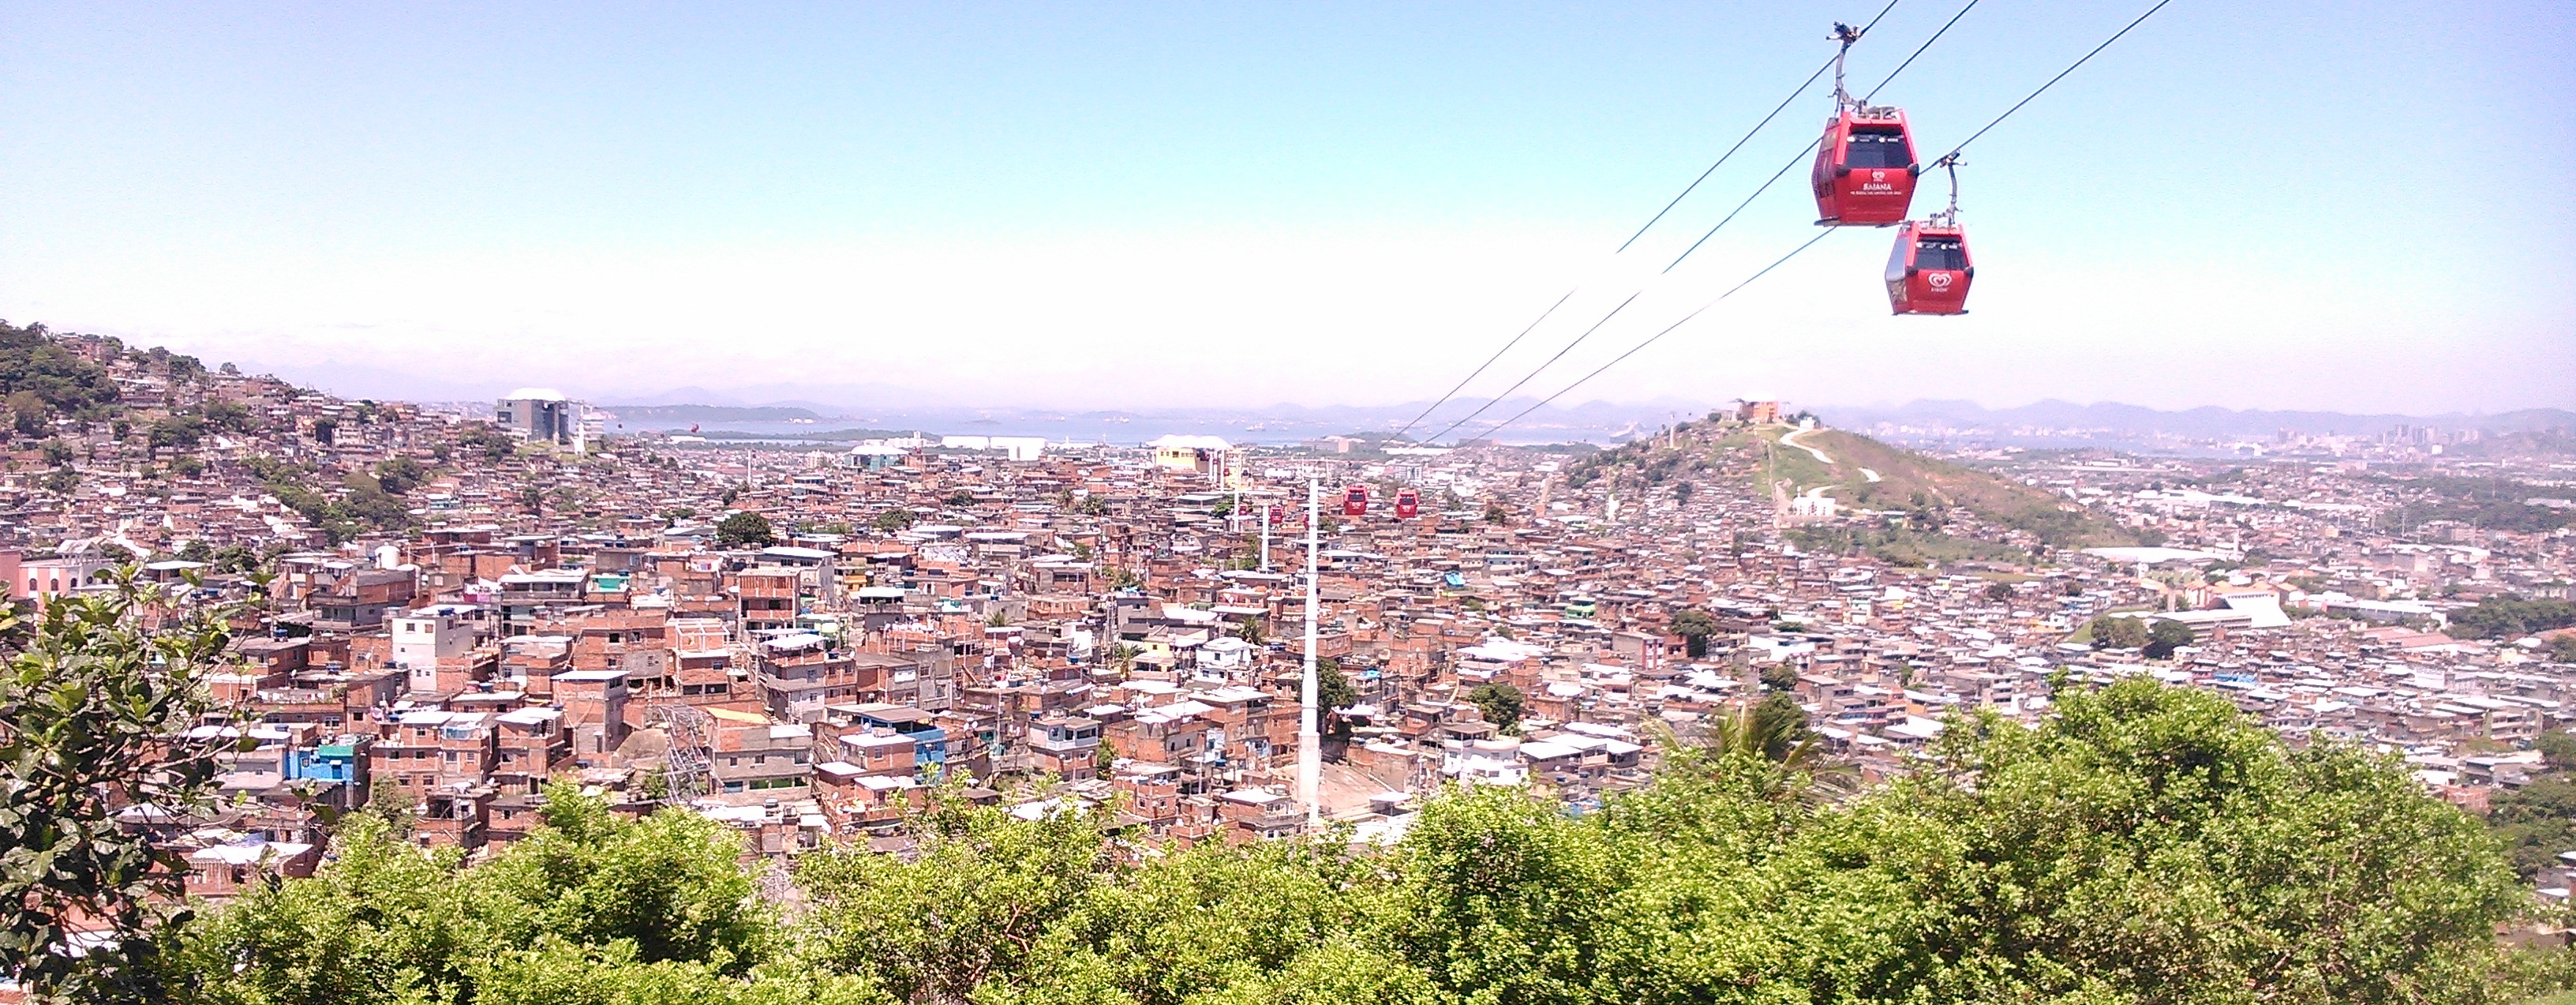 Welkom in de favela